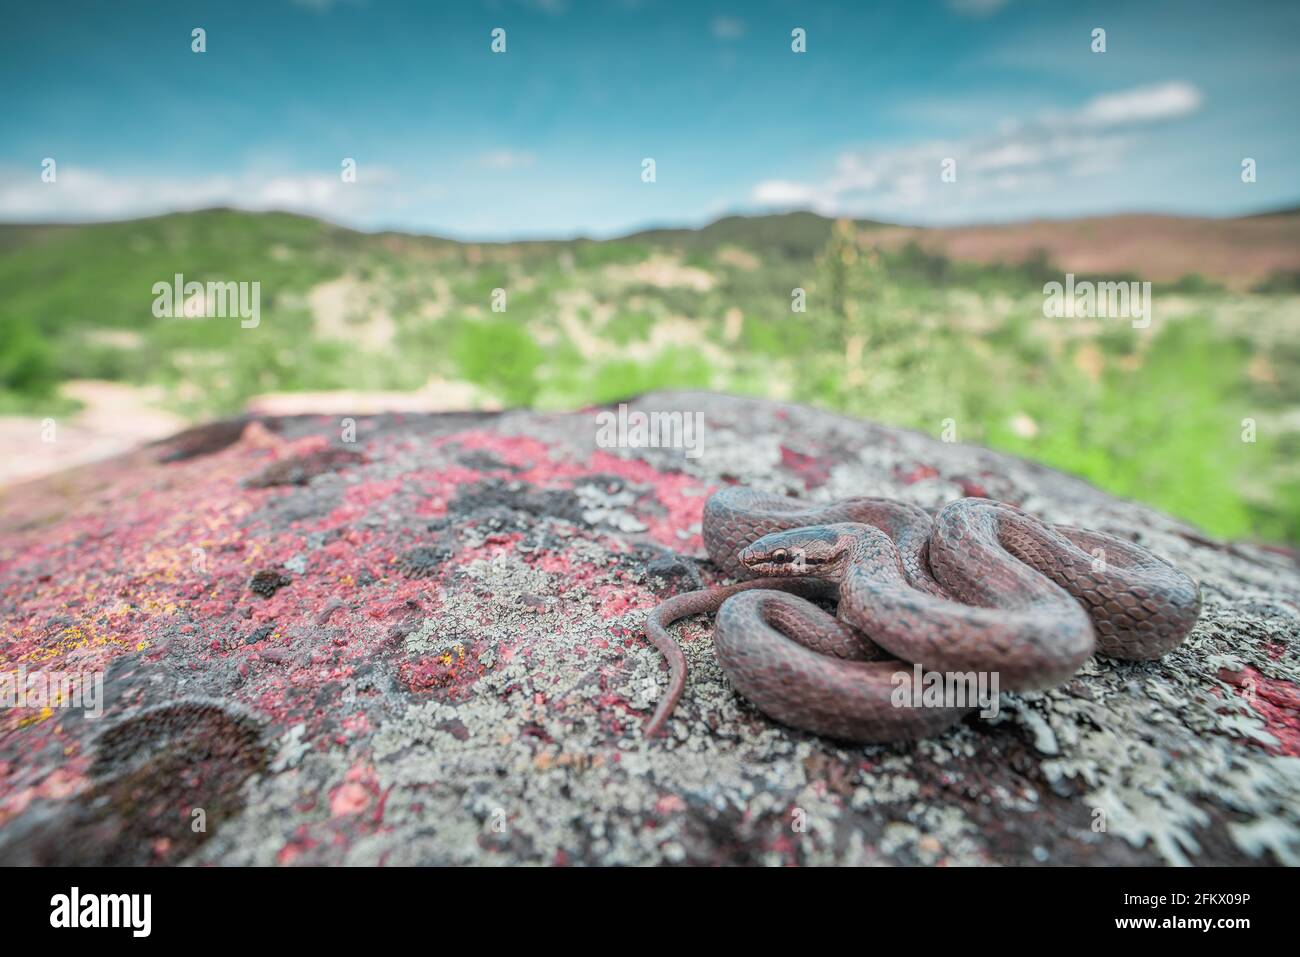 Gros plan de serpent lisse (Coronella austriaca) enroulé sur la roche grise. Paysage de montagne vert et ciel bleu en arrière-plan Banque D'Images